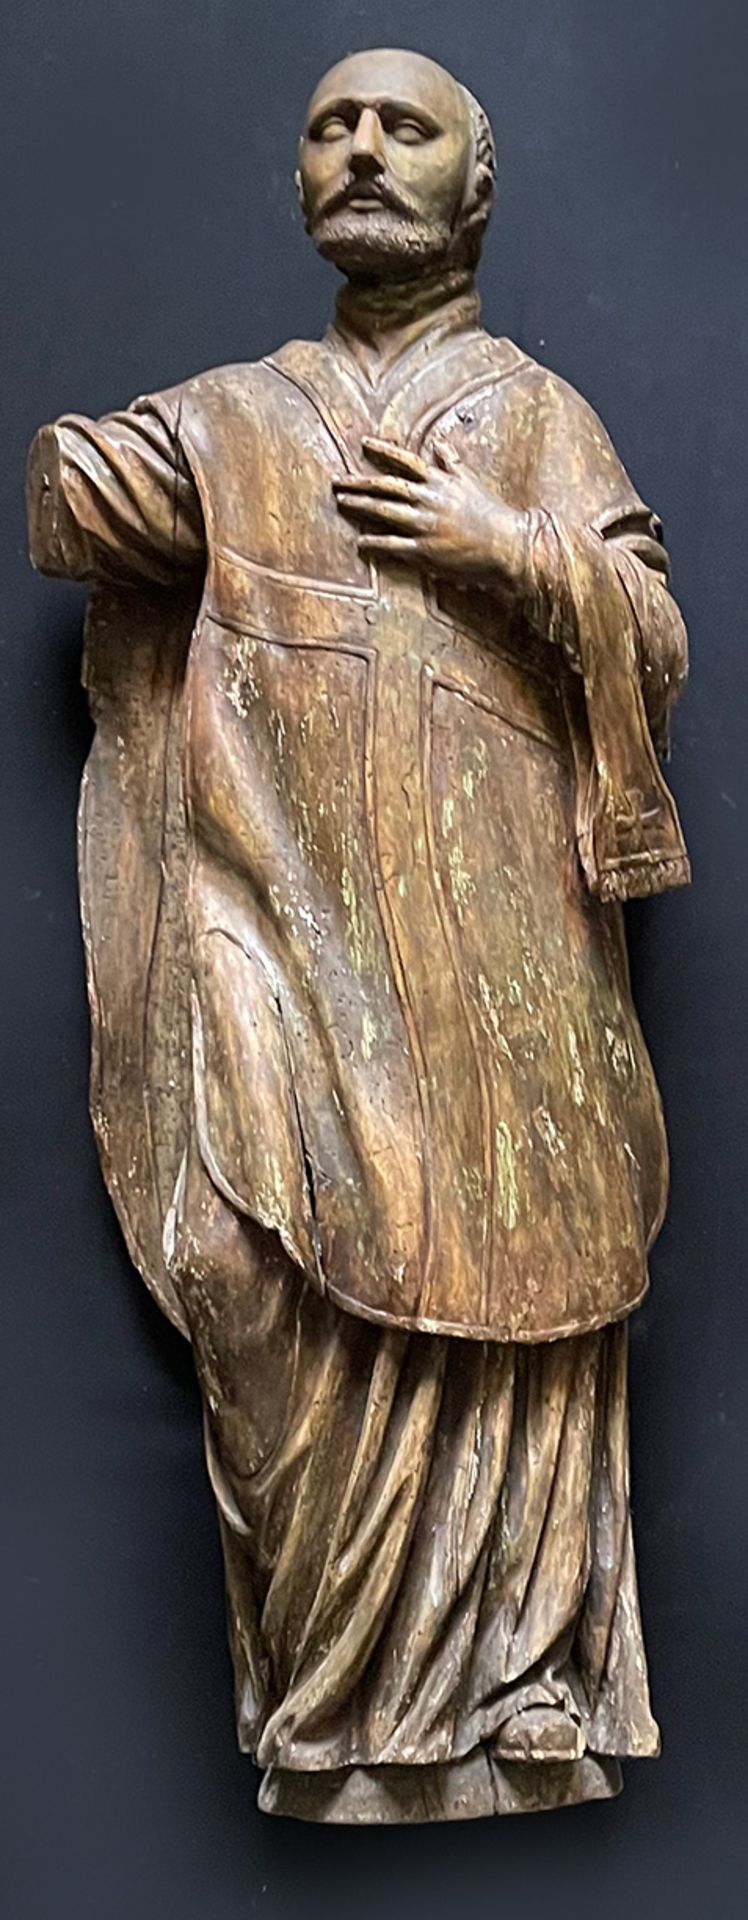 Spanien, 18. Jh. Bärtiger Heiliger im Gewand eines Diakons mit Albe und Kasel, Holz, rückseitig